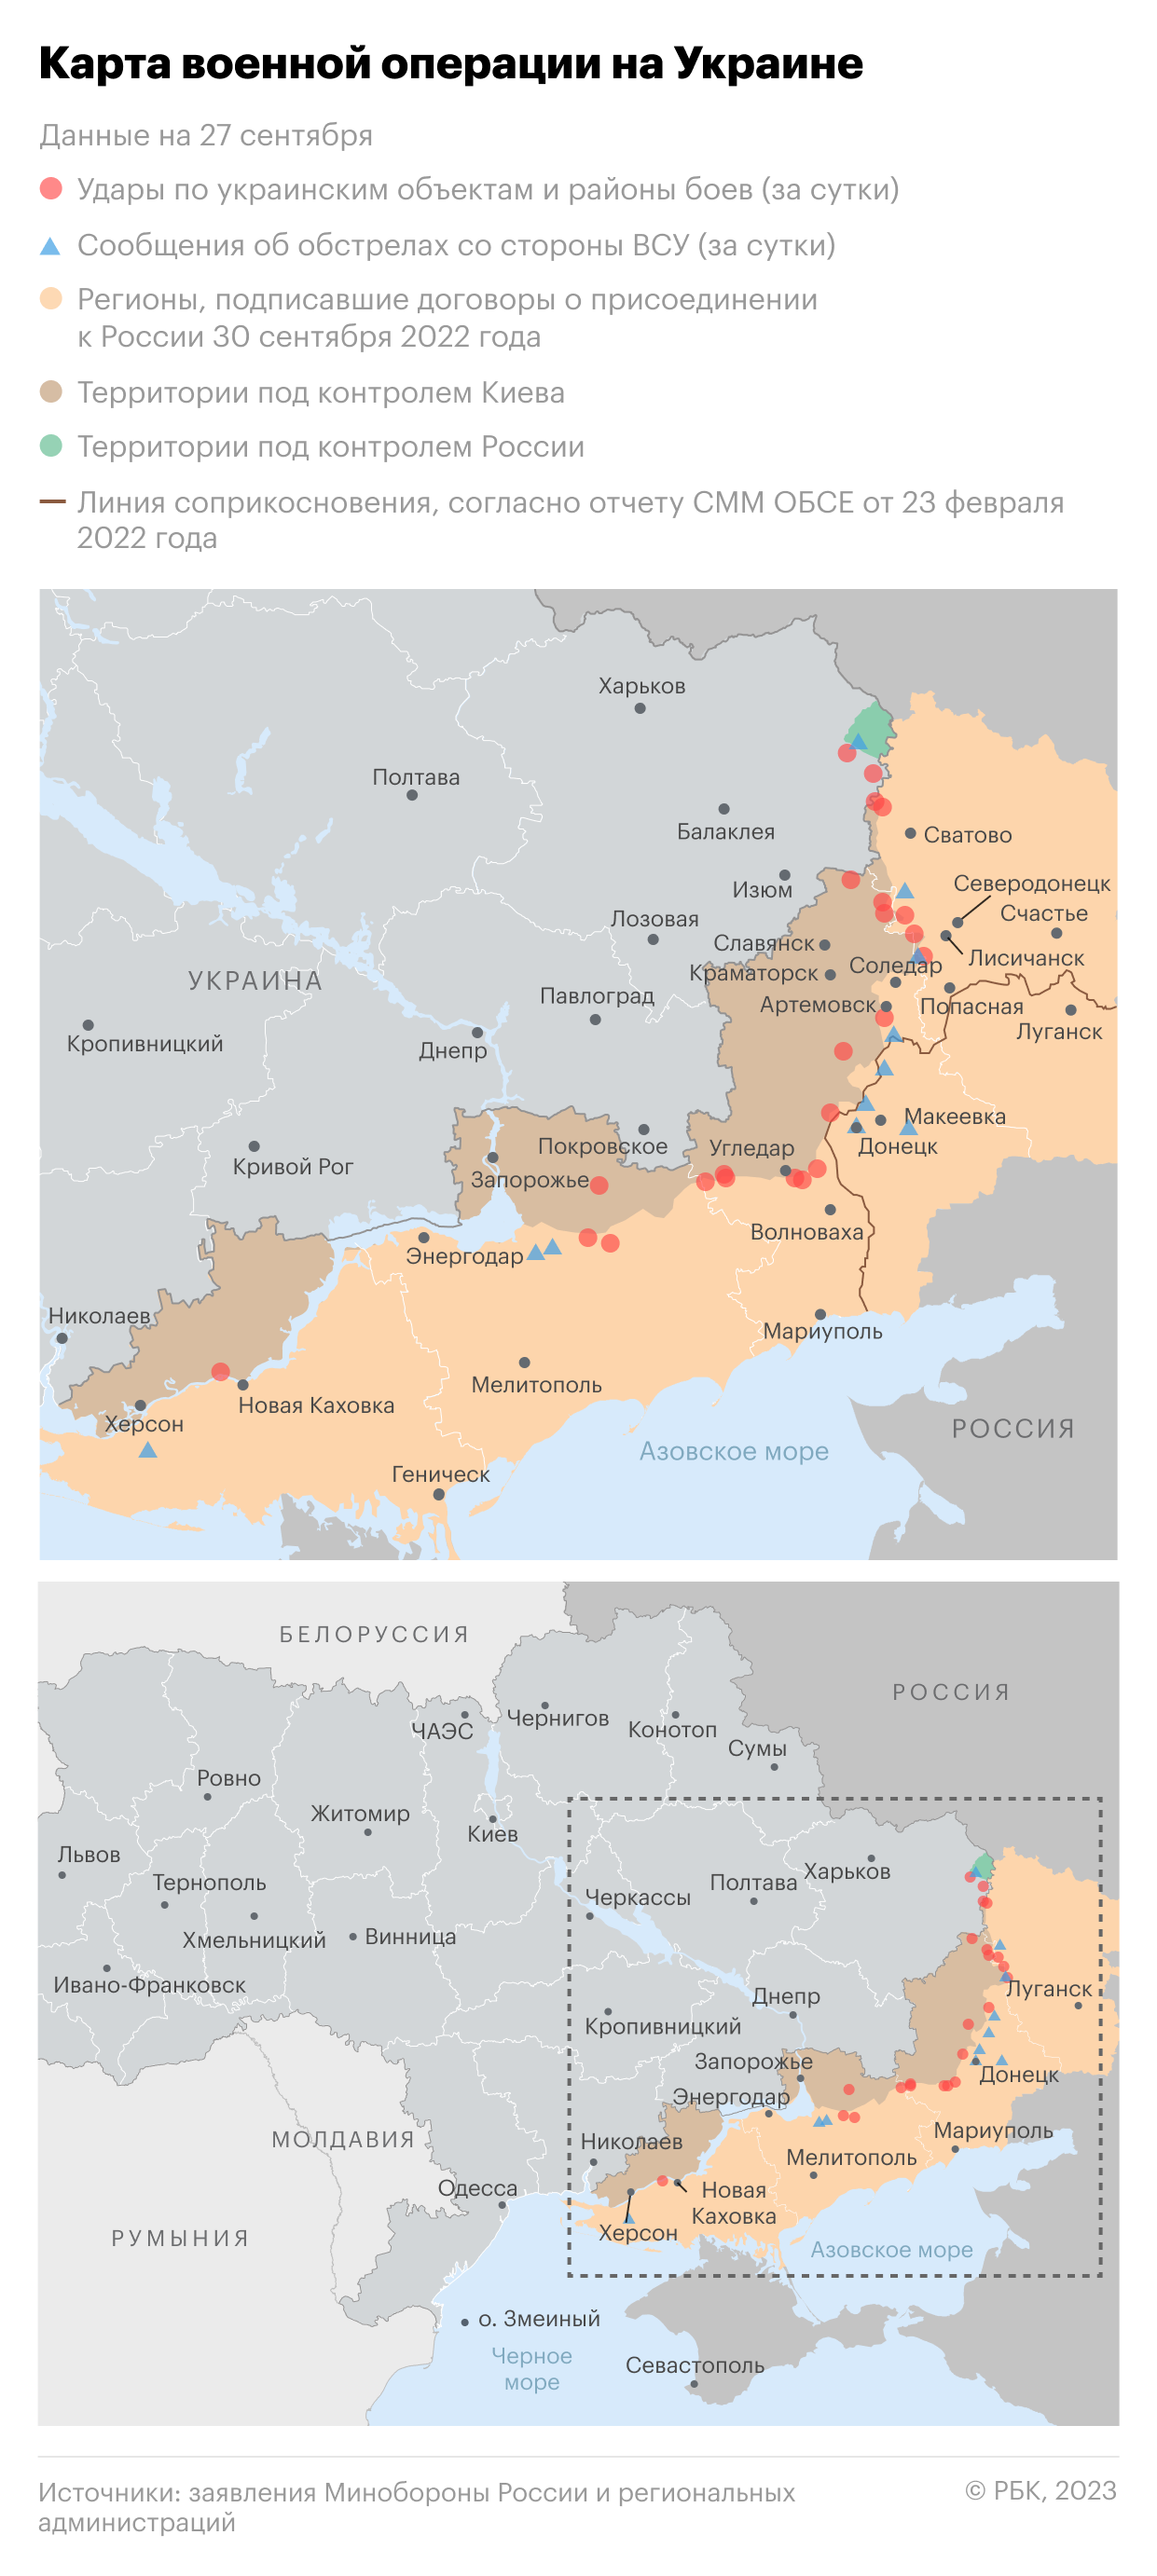 Военная операция на Украине. Карта на 27 сентября